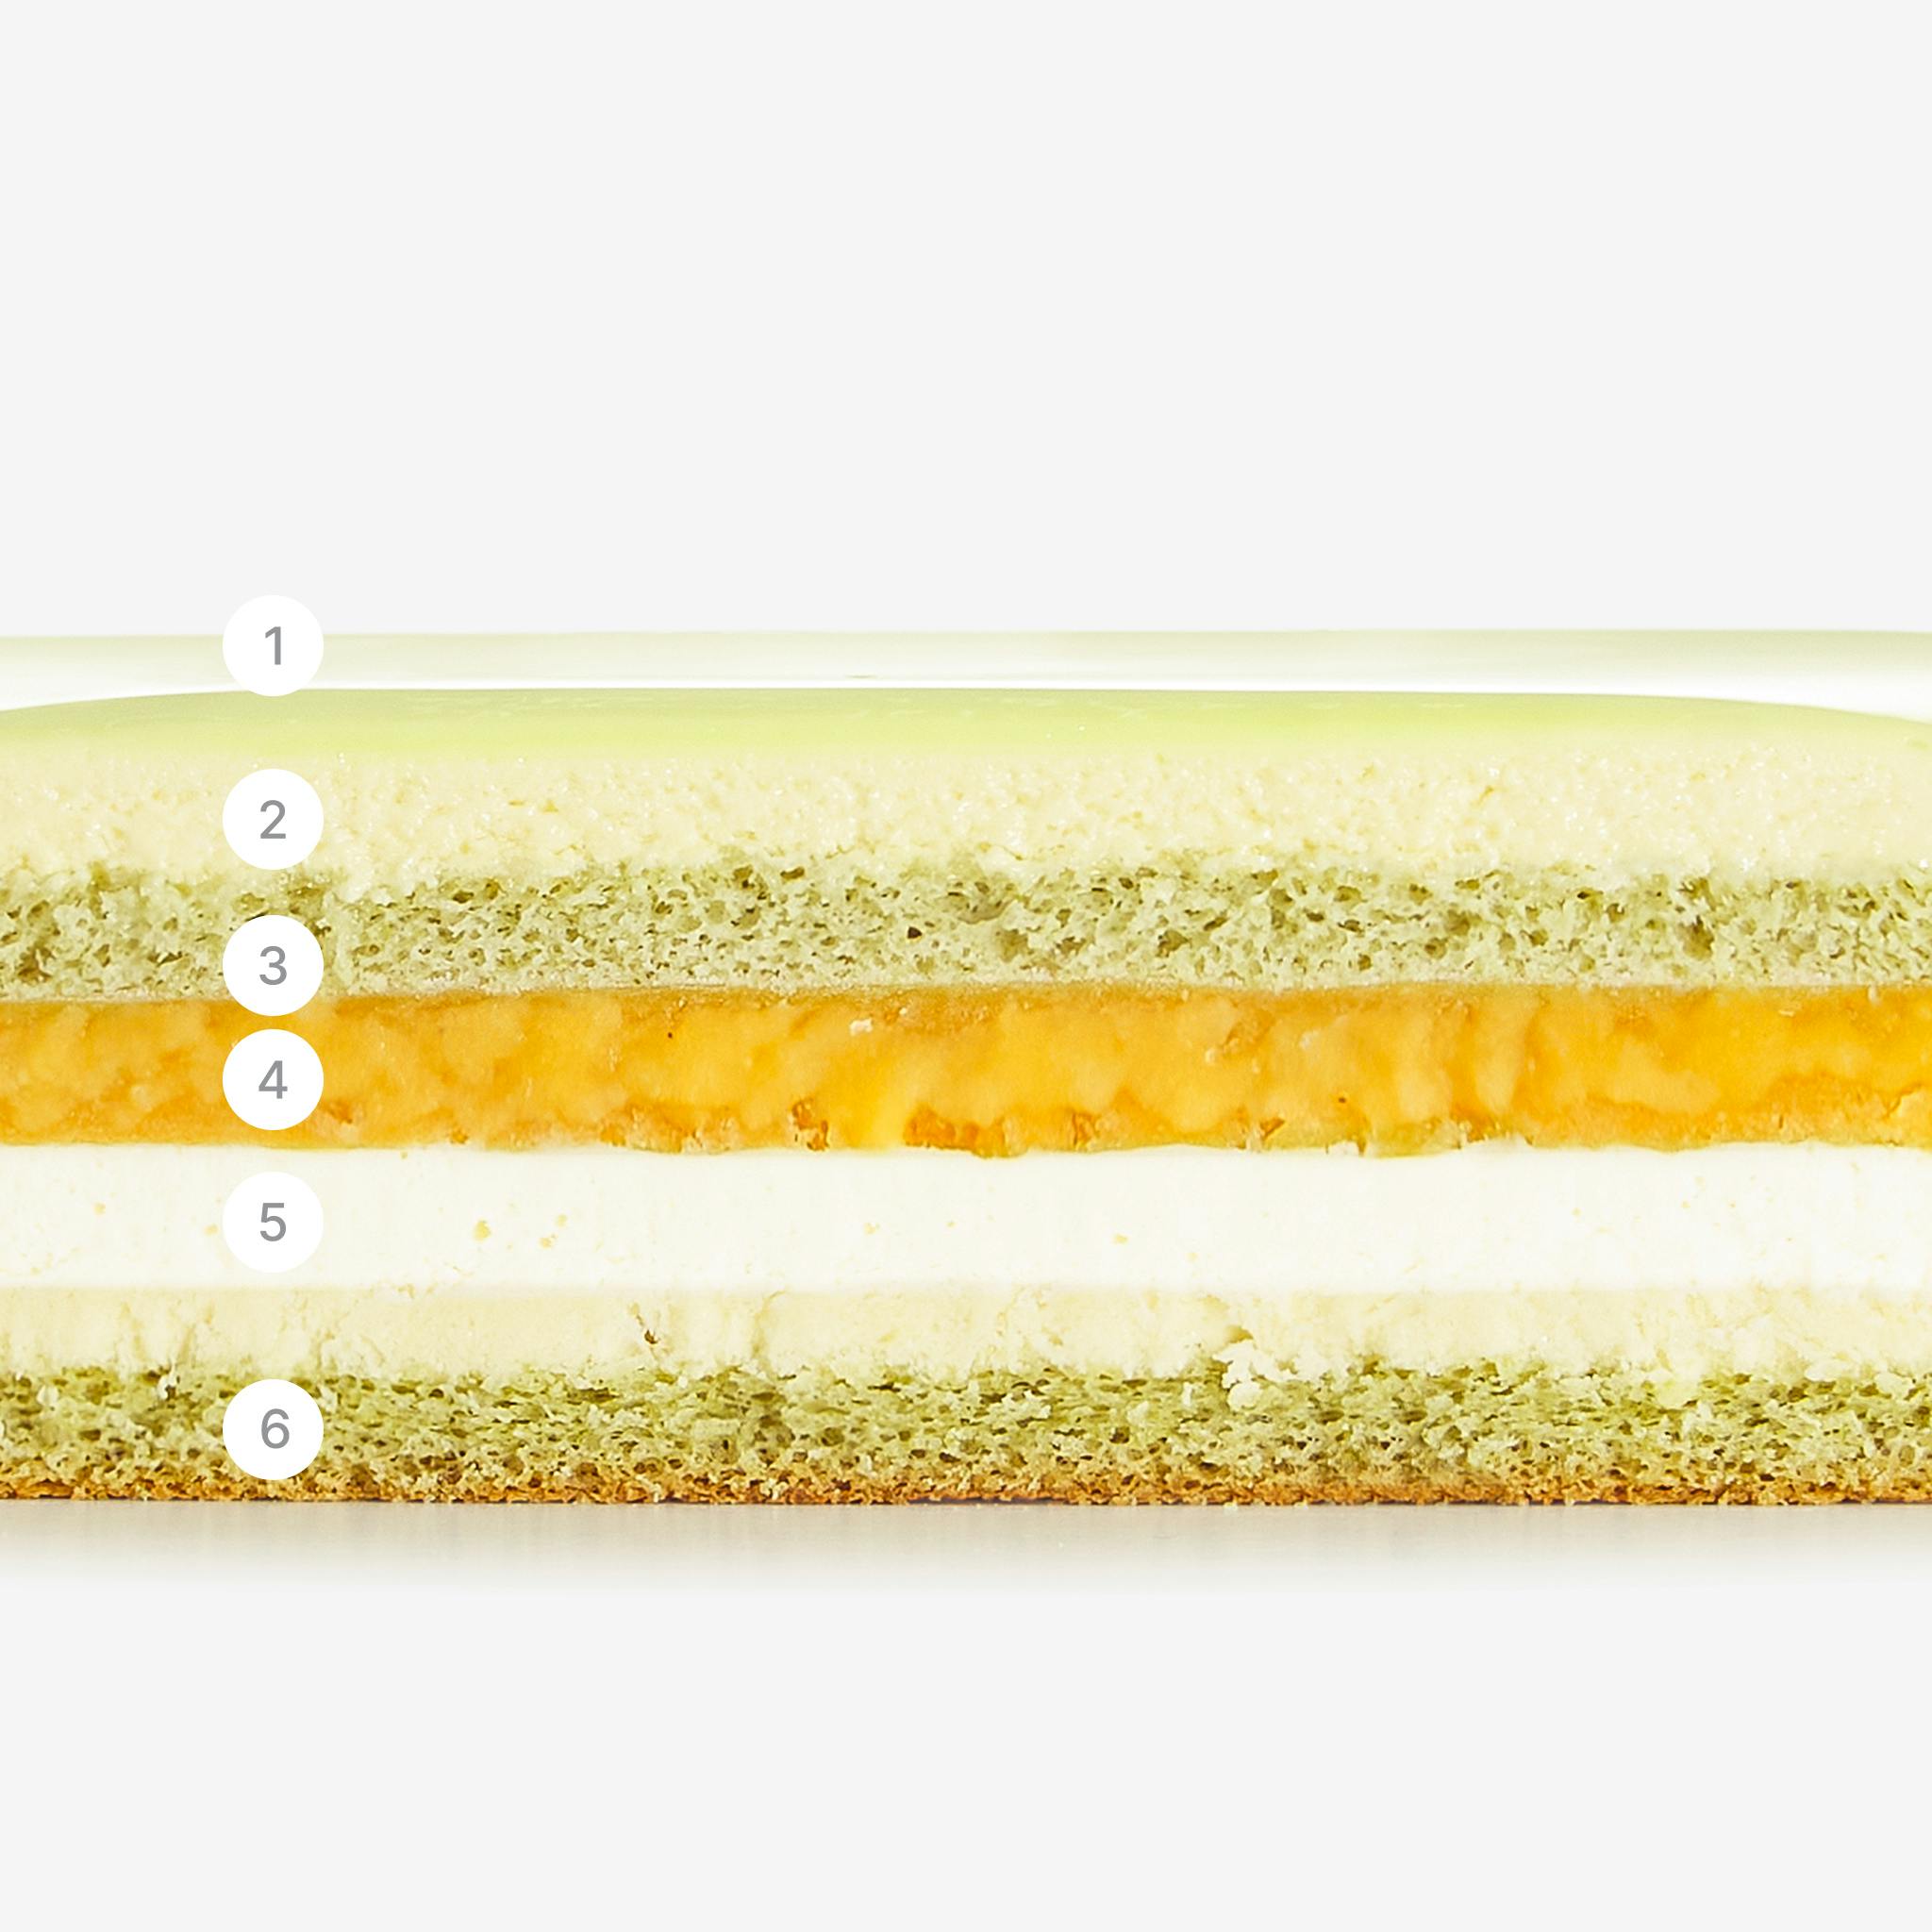 LaFuong Pastry – Orient Scent – Xoài, Lá dứa & Phô mai. Một chiếc bánh có thiết kế tối giản, lịch thiệp, nhưng chứa đựng một ý nghĩa sâu sắc.,Chiếc bánh Orient Scent được ra đời với thông điệp về sự đủ đầy & tốt lành. “Trời tròn - Đất vuông” đơn giản như vậy, tạo hình trên nền tráng gương màu xanh lá dịu mát có hình vuông tượng trưng cho đất & hình tròn tượng trưng cho trời. Hương vị chủ đạo là xoài tươi và lá dứa - đậm chất Châu Á, kết hợp thêm cùng phô-mai cream cheese của Châu Âu, chiếc bánh này sẽ đem lại cảm giác tươi mát, thơm ngậy và ngọt dịu khi thưởng thức. 